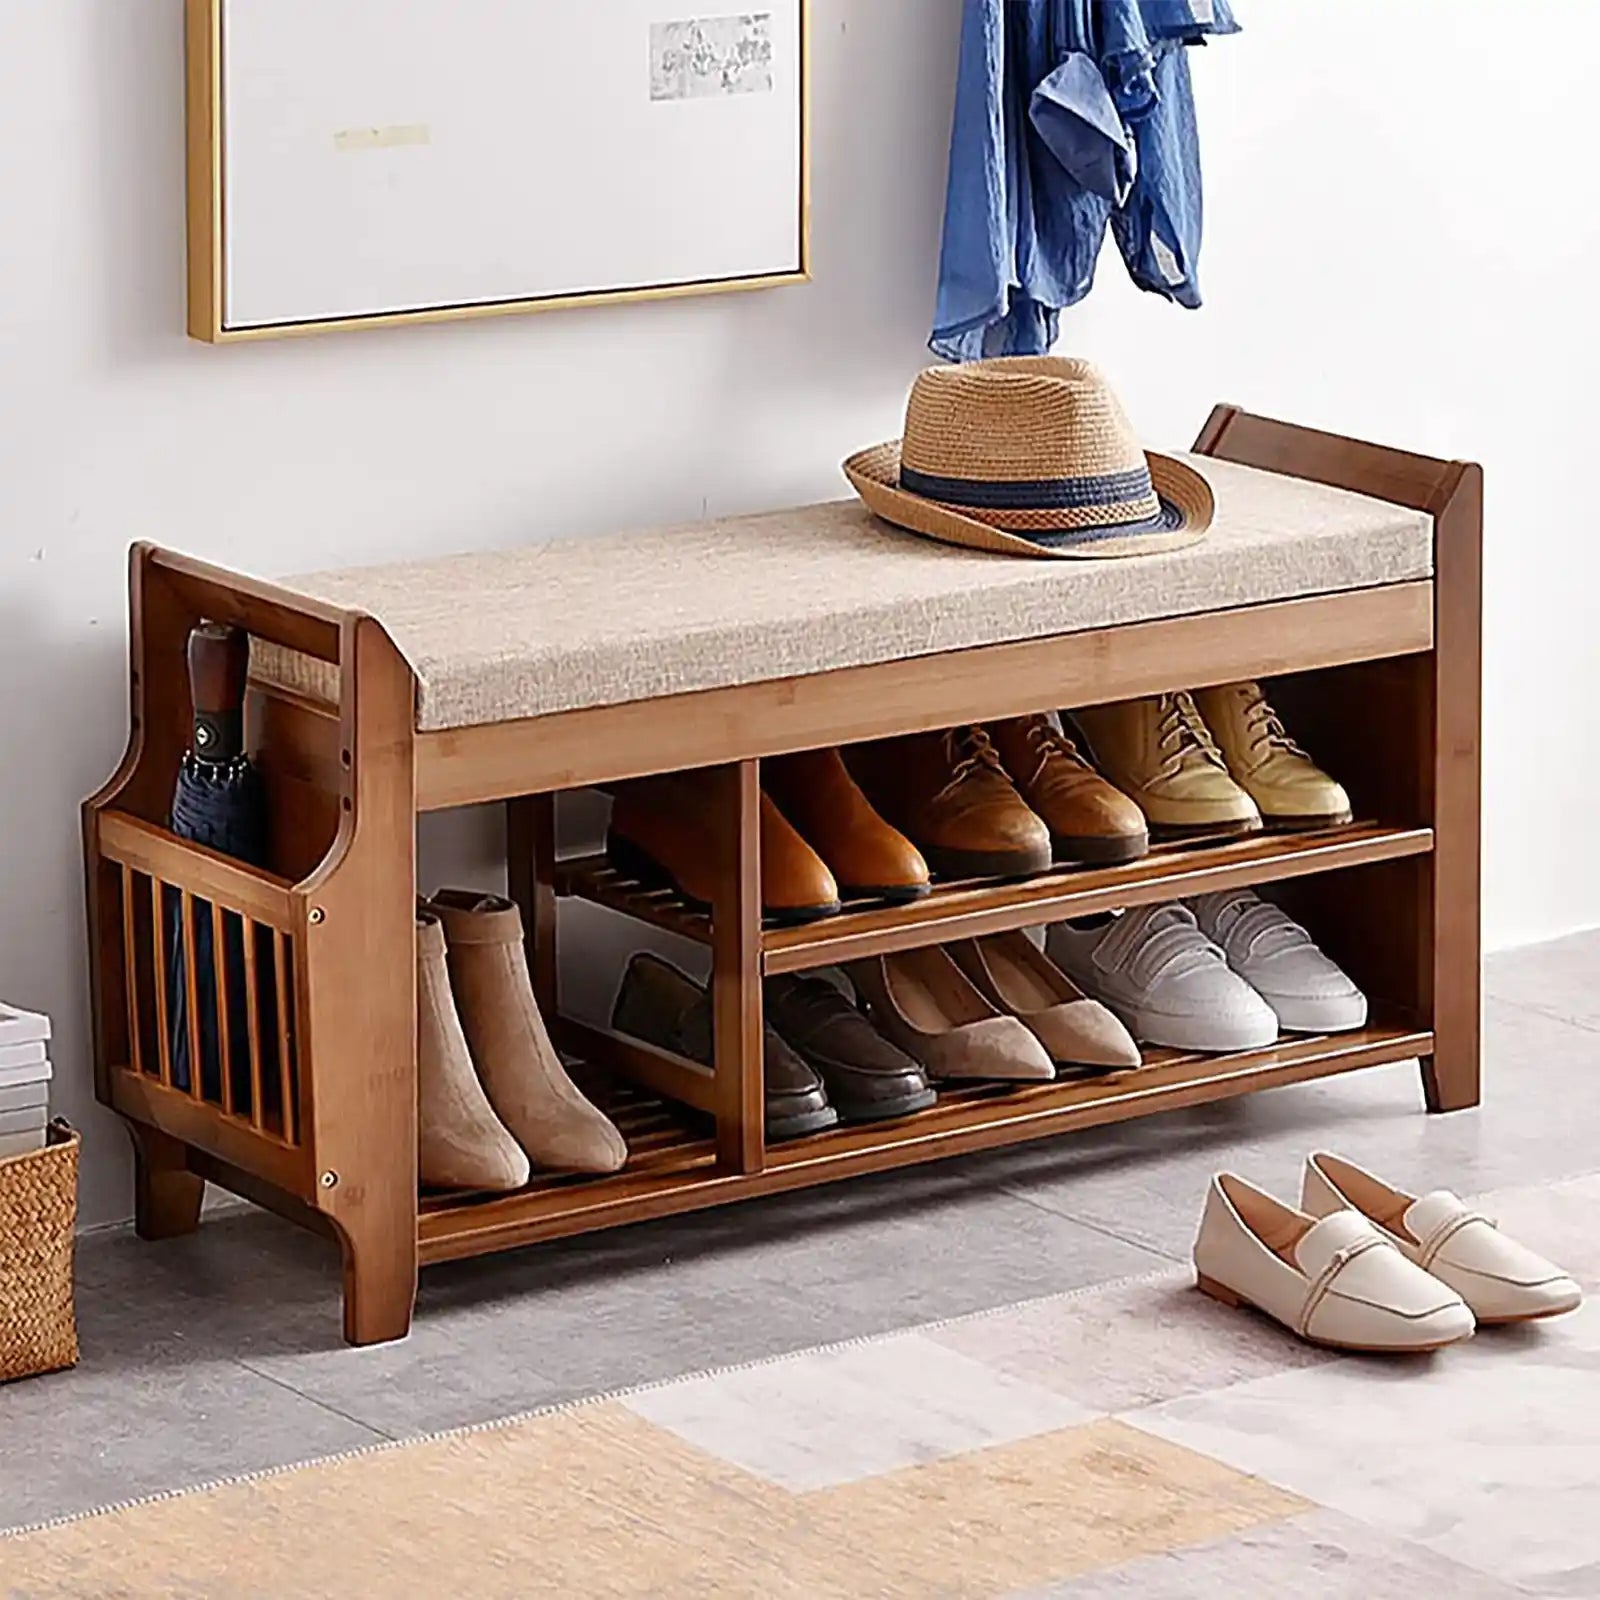 Banco de zapatos de diseño único con cajón oculto y soporte lateral | Construcción de bambú de primera calidad | Fácil de limpiar | Amplia capacidad de almacenamiento